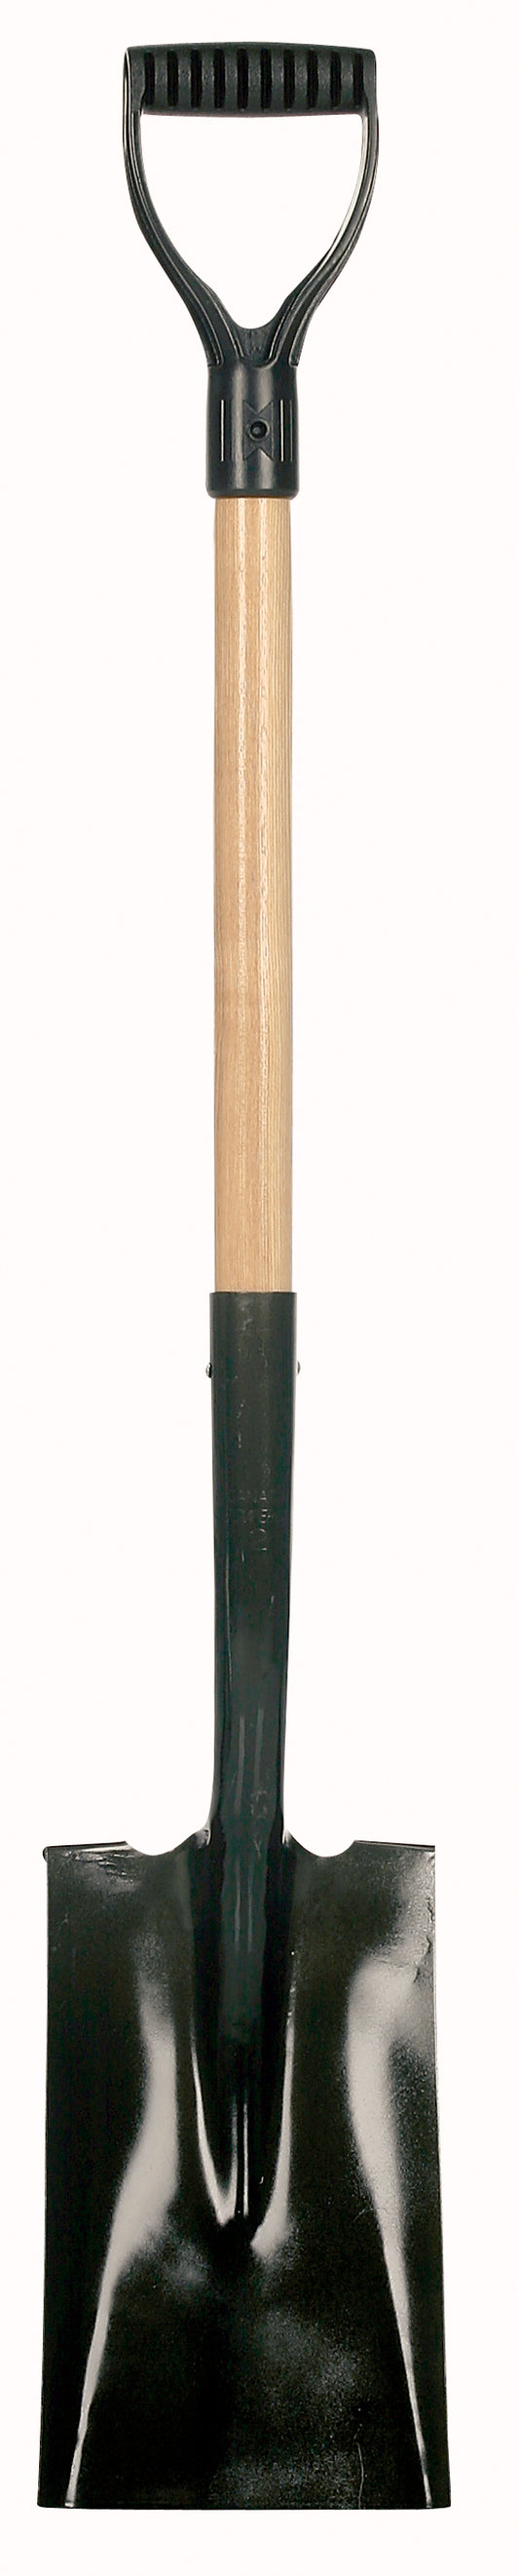 Garden spade, wood handle